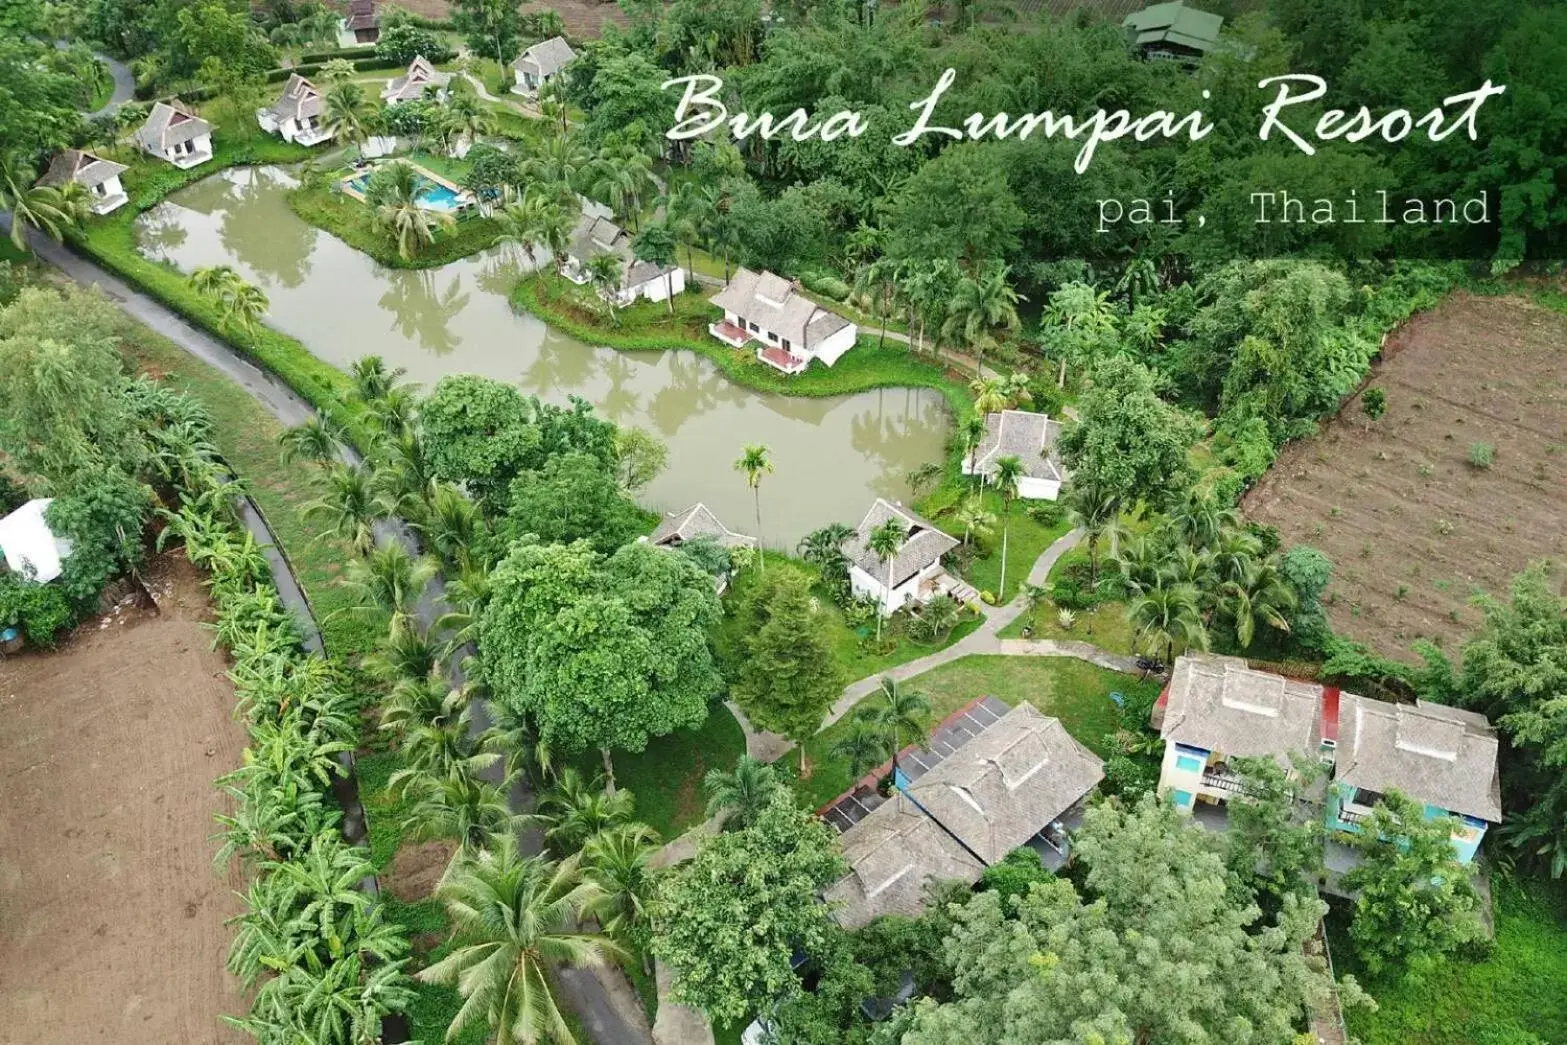 Bird's eye view in Bura Lumpai Resort